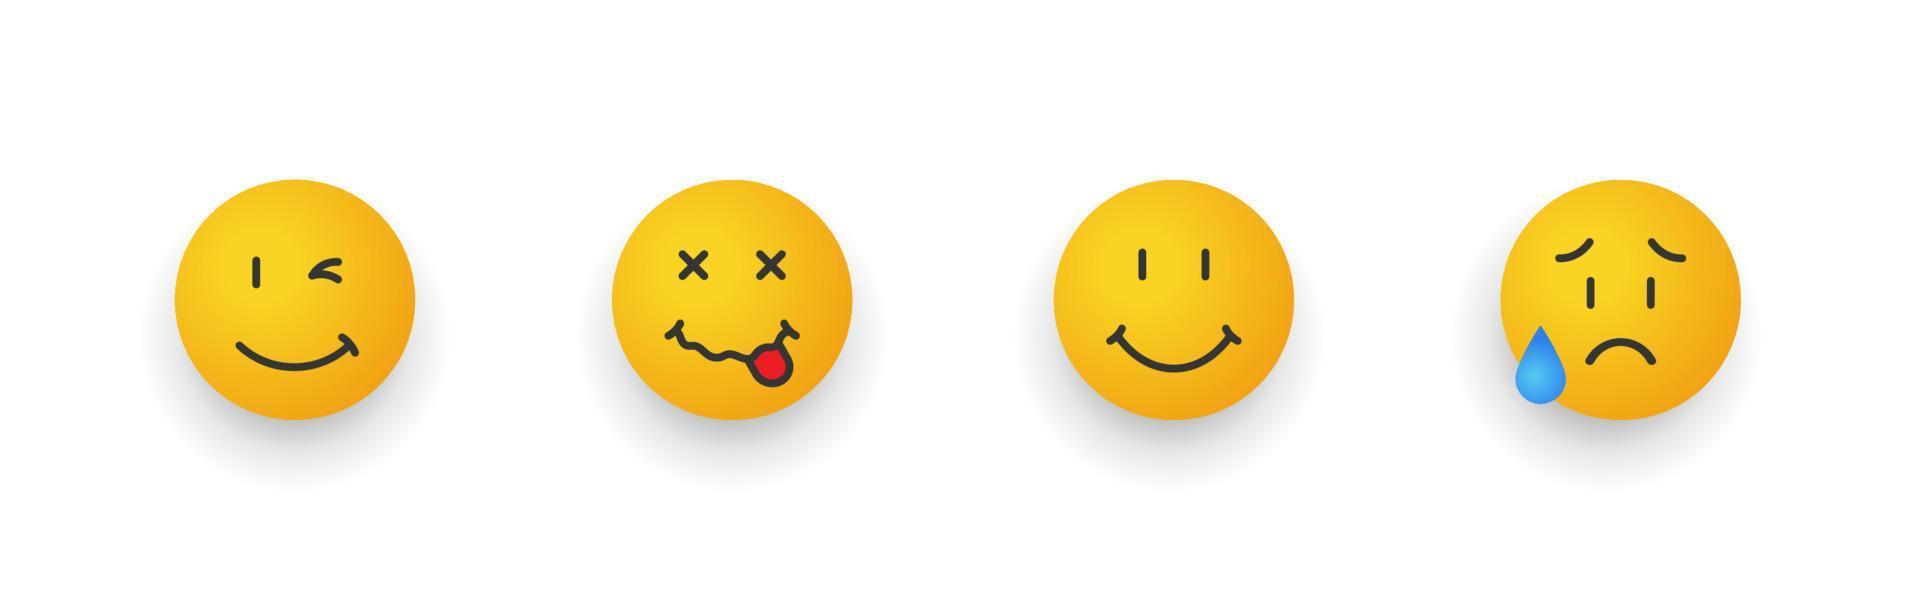 ensemble d'icônes de sourire. ensemble d'emoji de dessin animé. visages souriants avec différentes émotions. illustration vectorielle vecteur